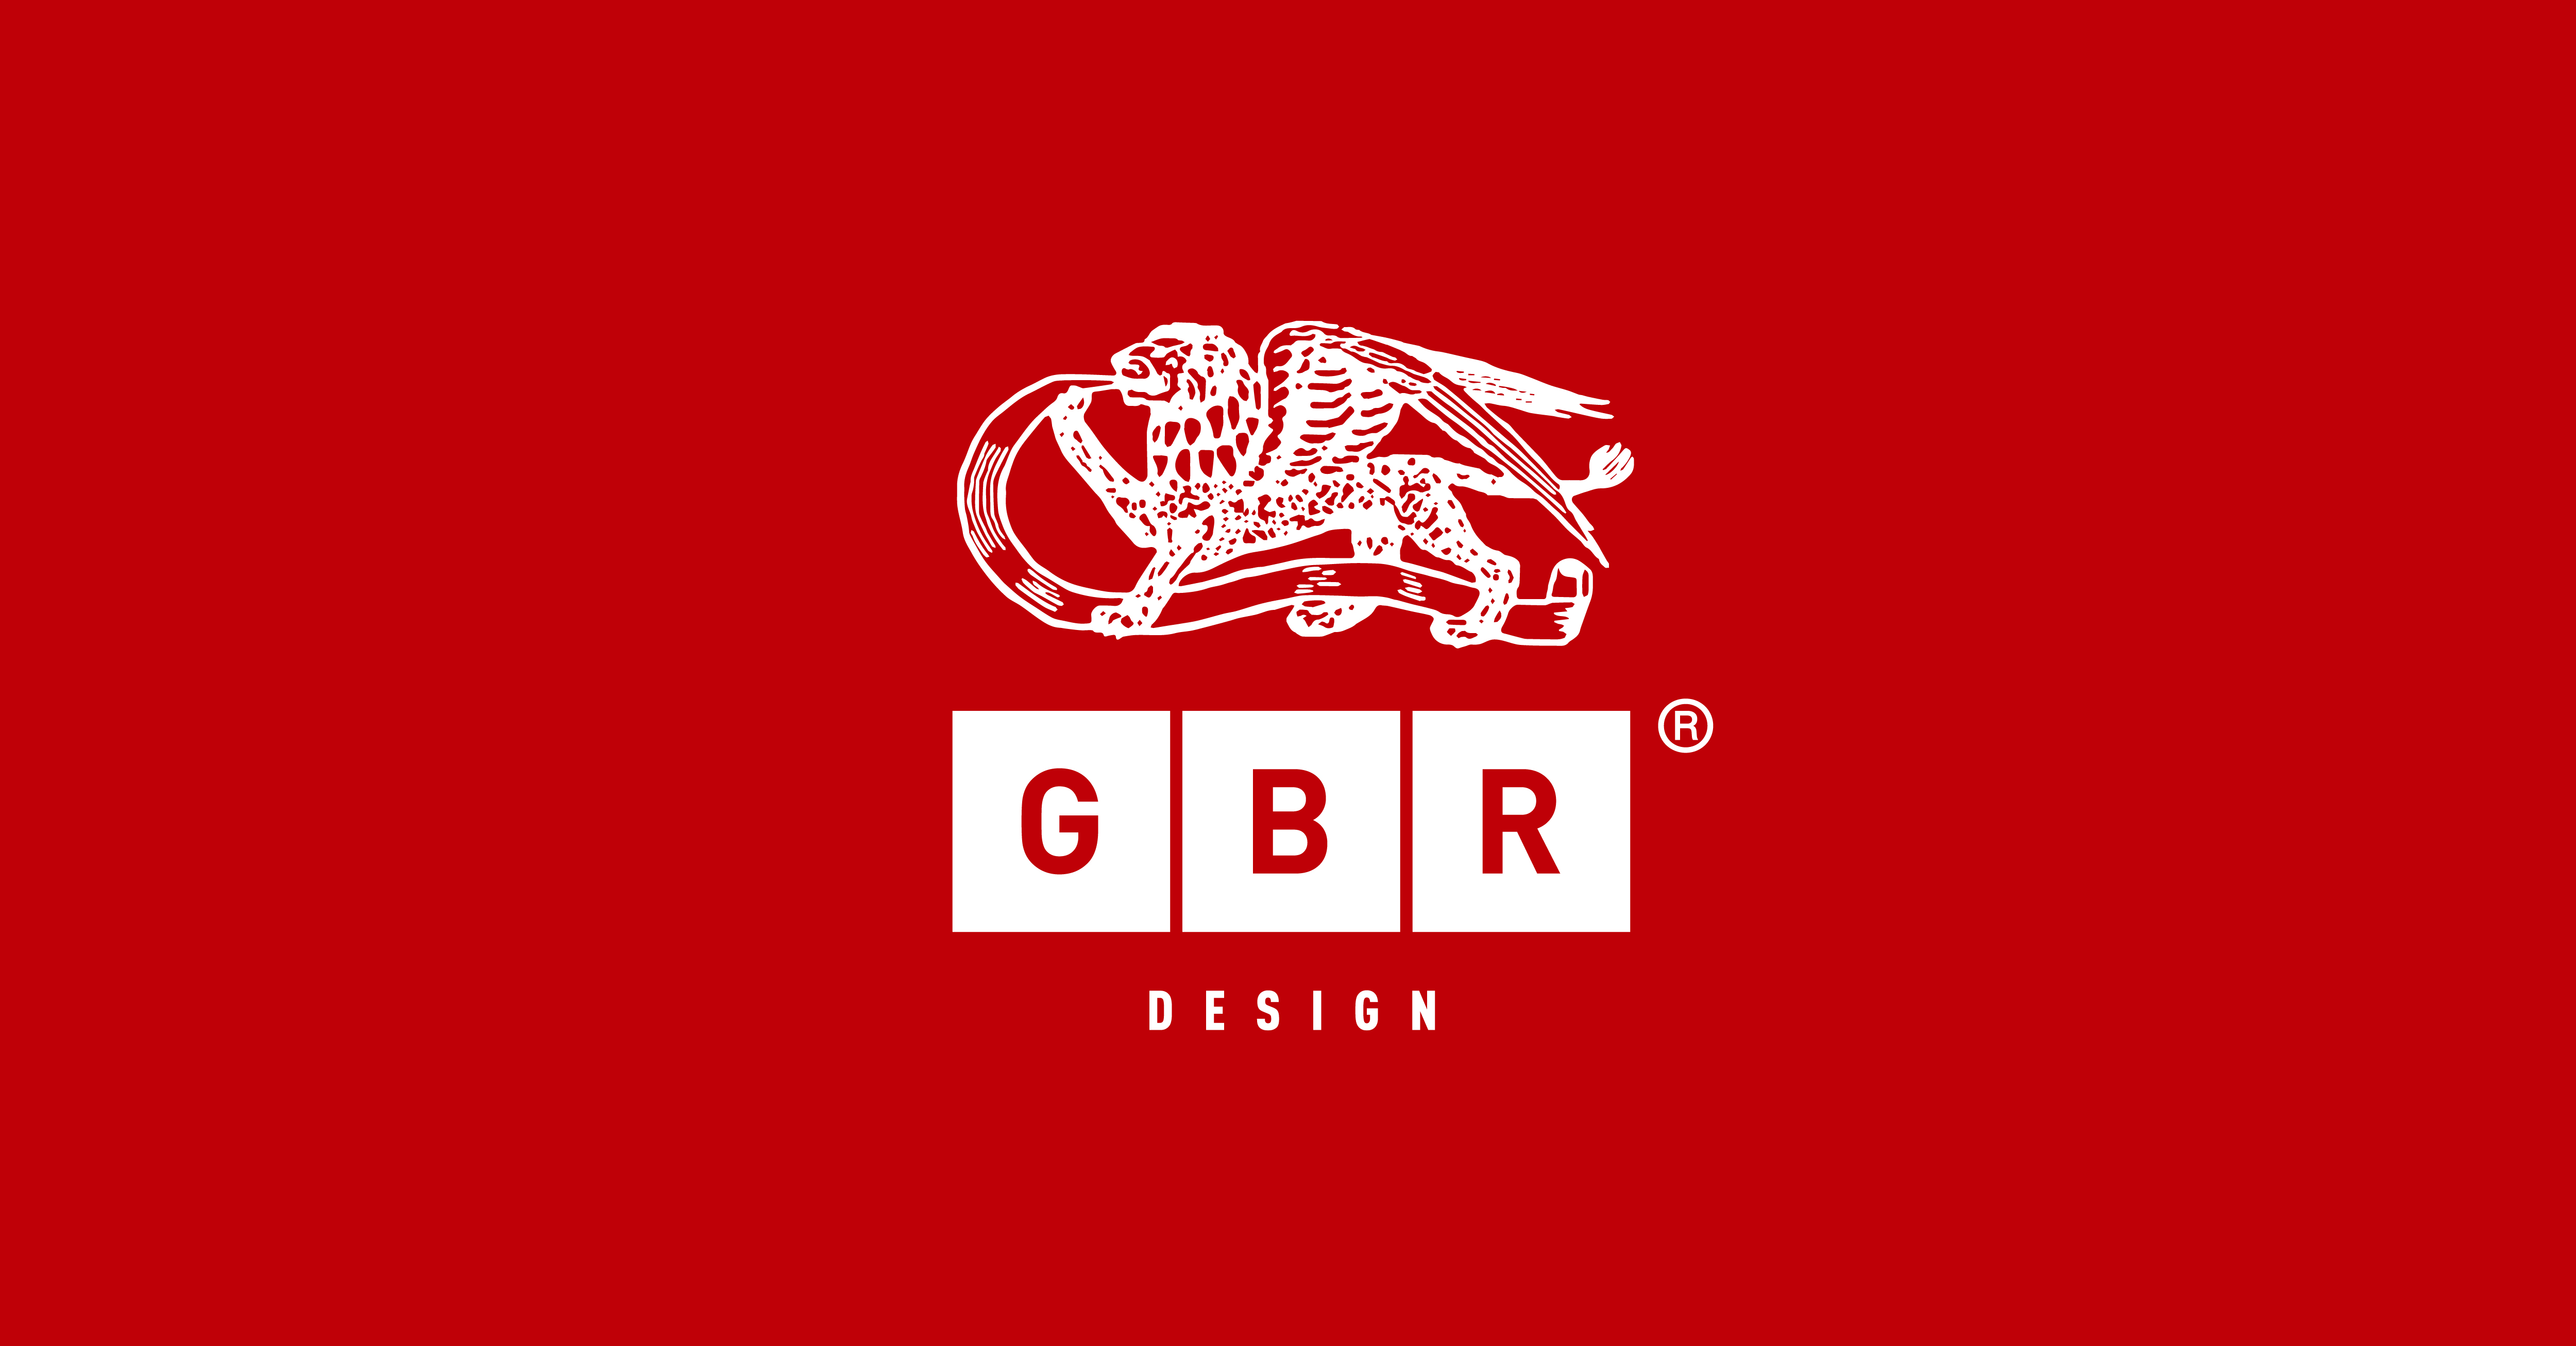 (c) Gbrdesign.com